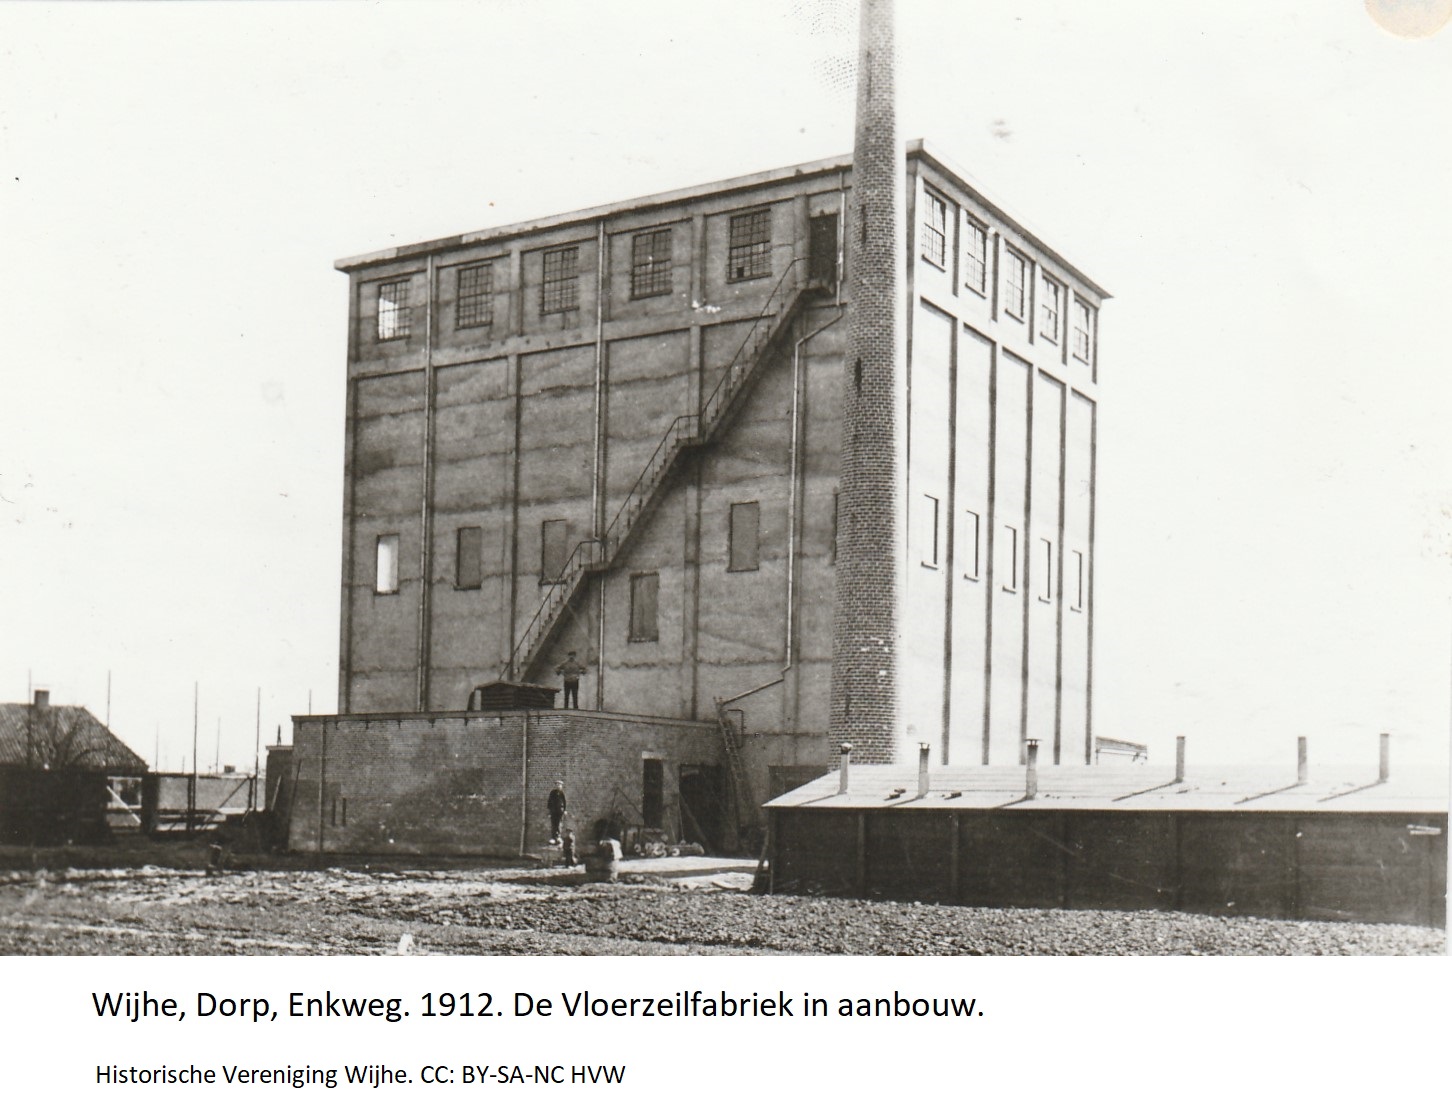 Wijhe, Dorp, Enkweg. 1912. De Vloerzeilfabriek in aanbouw.